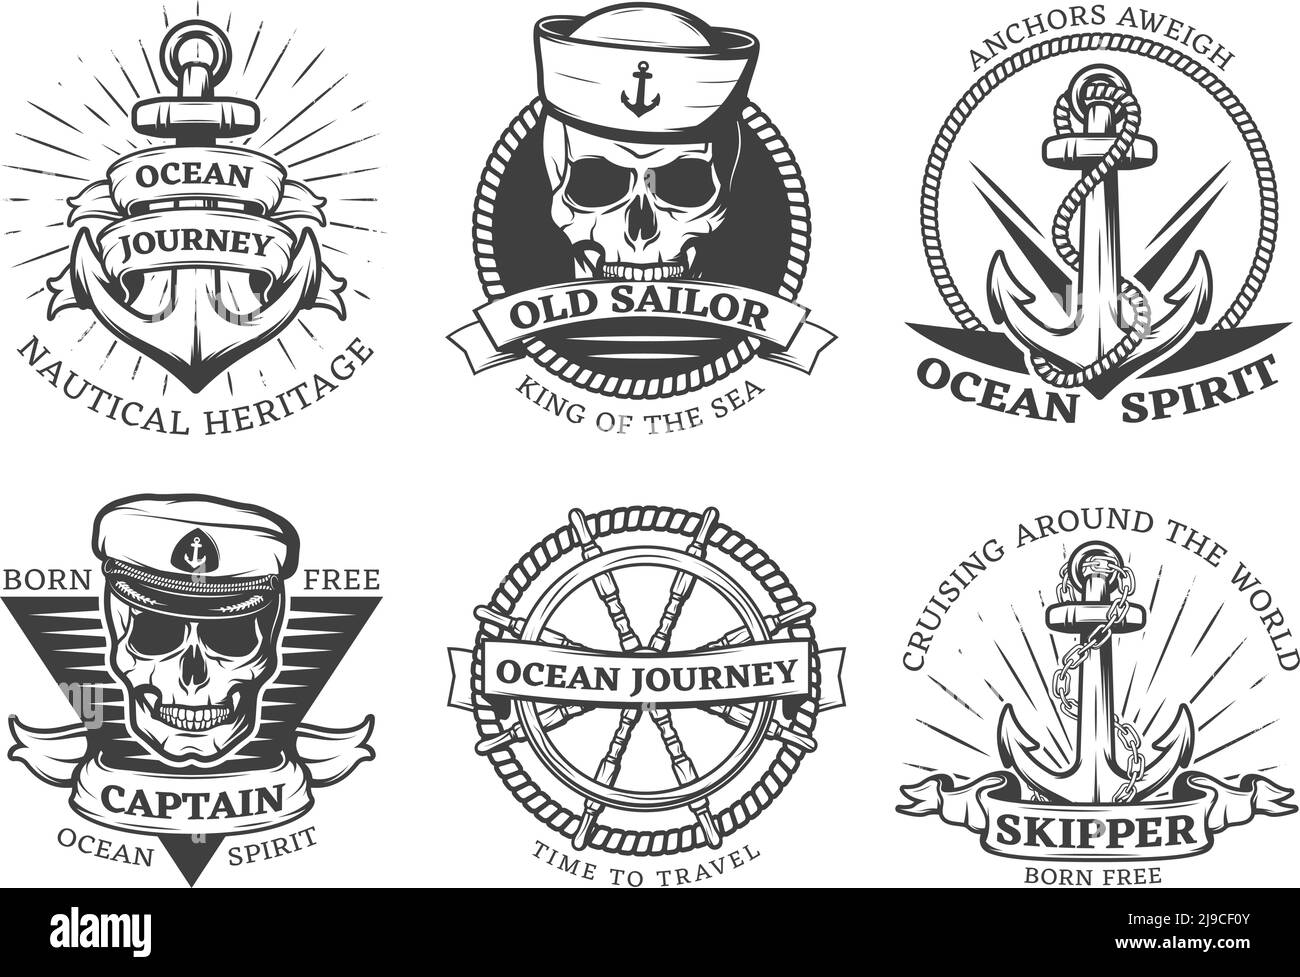 Ancien tattoo Anchor Set avec ancres de patrimoine nautique de voyage d'océan aweigh ocean spirit descriptions illustration vectorielle Illustration de Vecteur